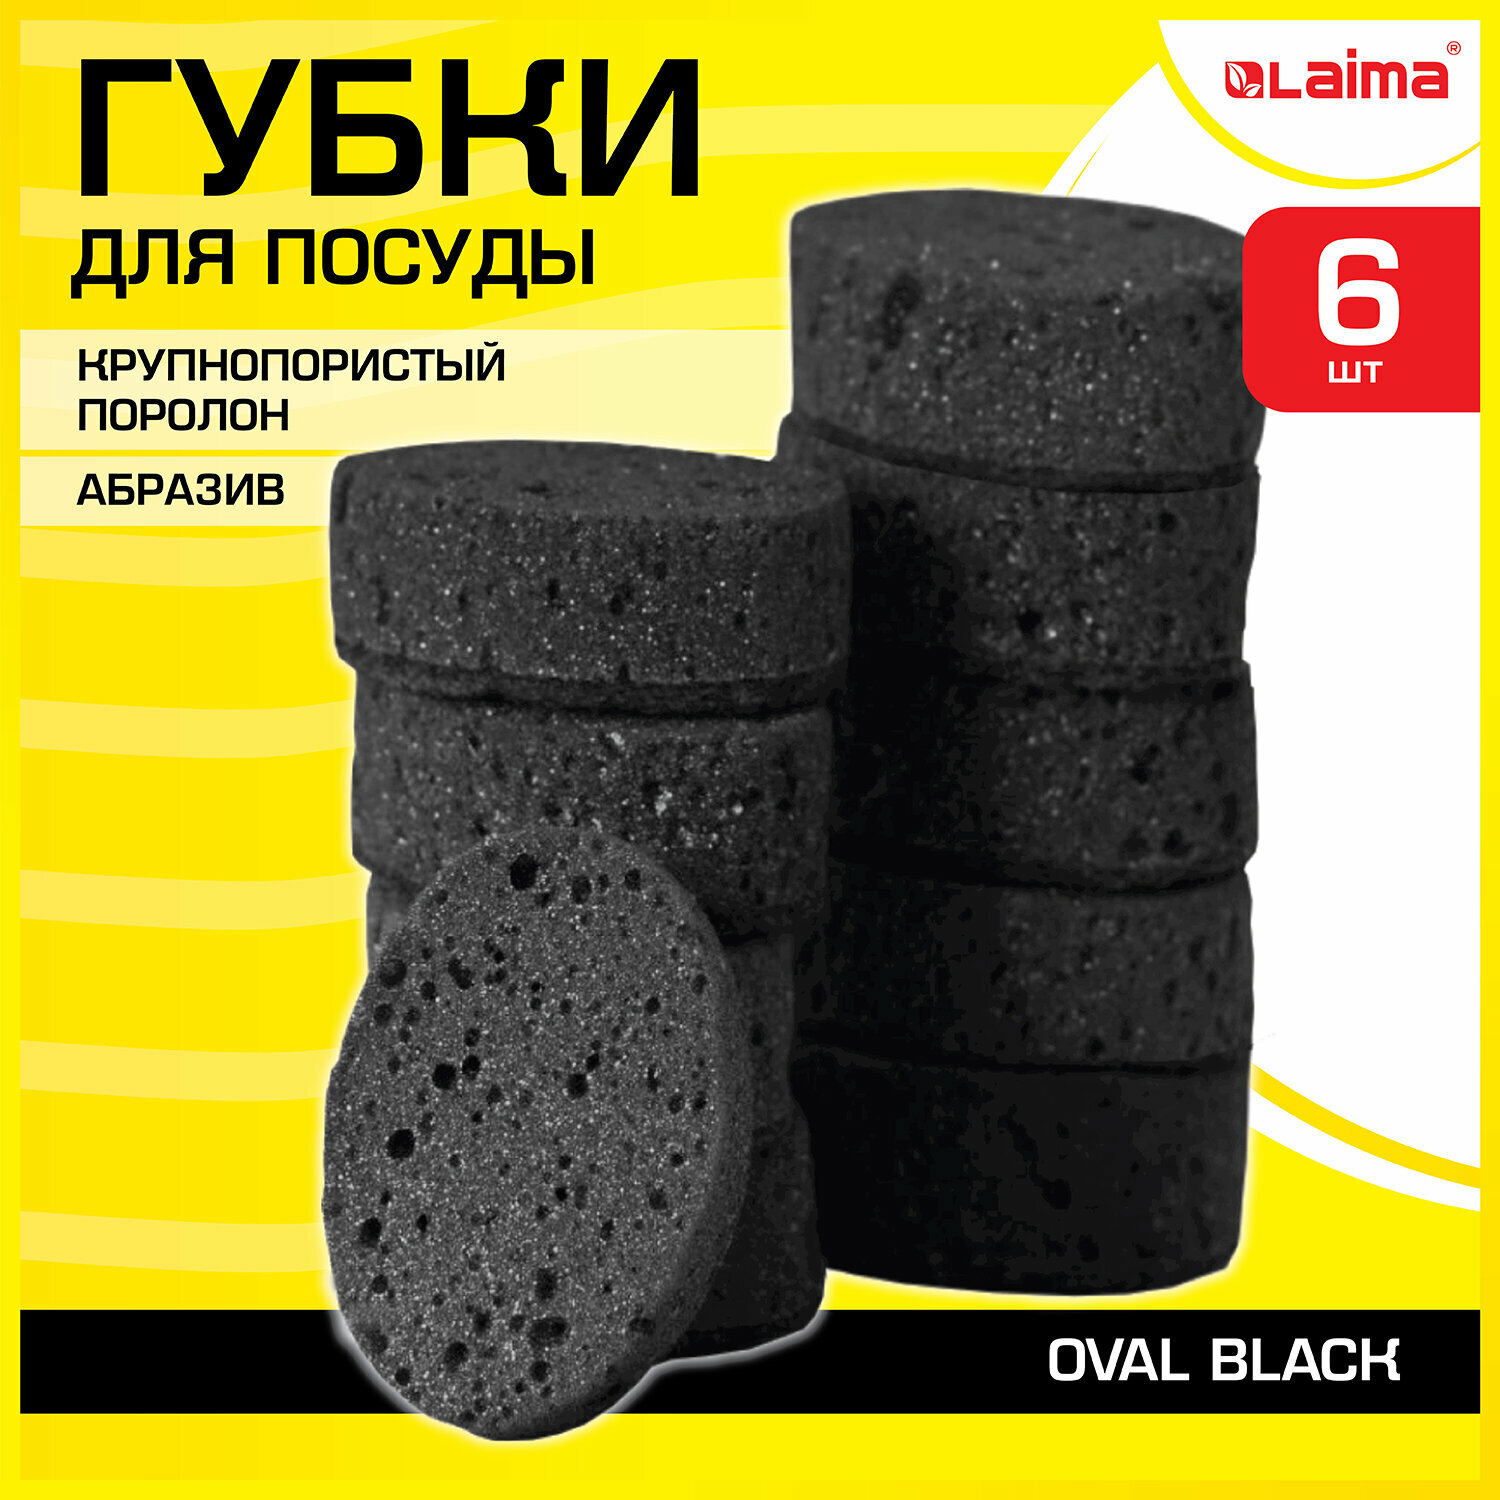 Губки для посуды OVAL BLACK 95х65х35 мм комплект 6 шт, крупнопористый поролон/абразив LAIMA, 608649